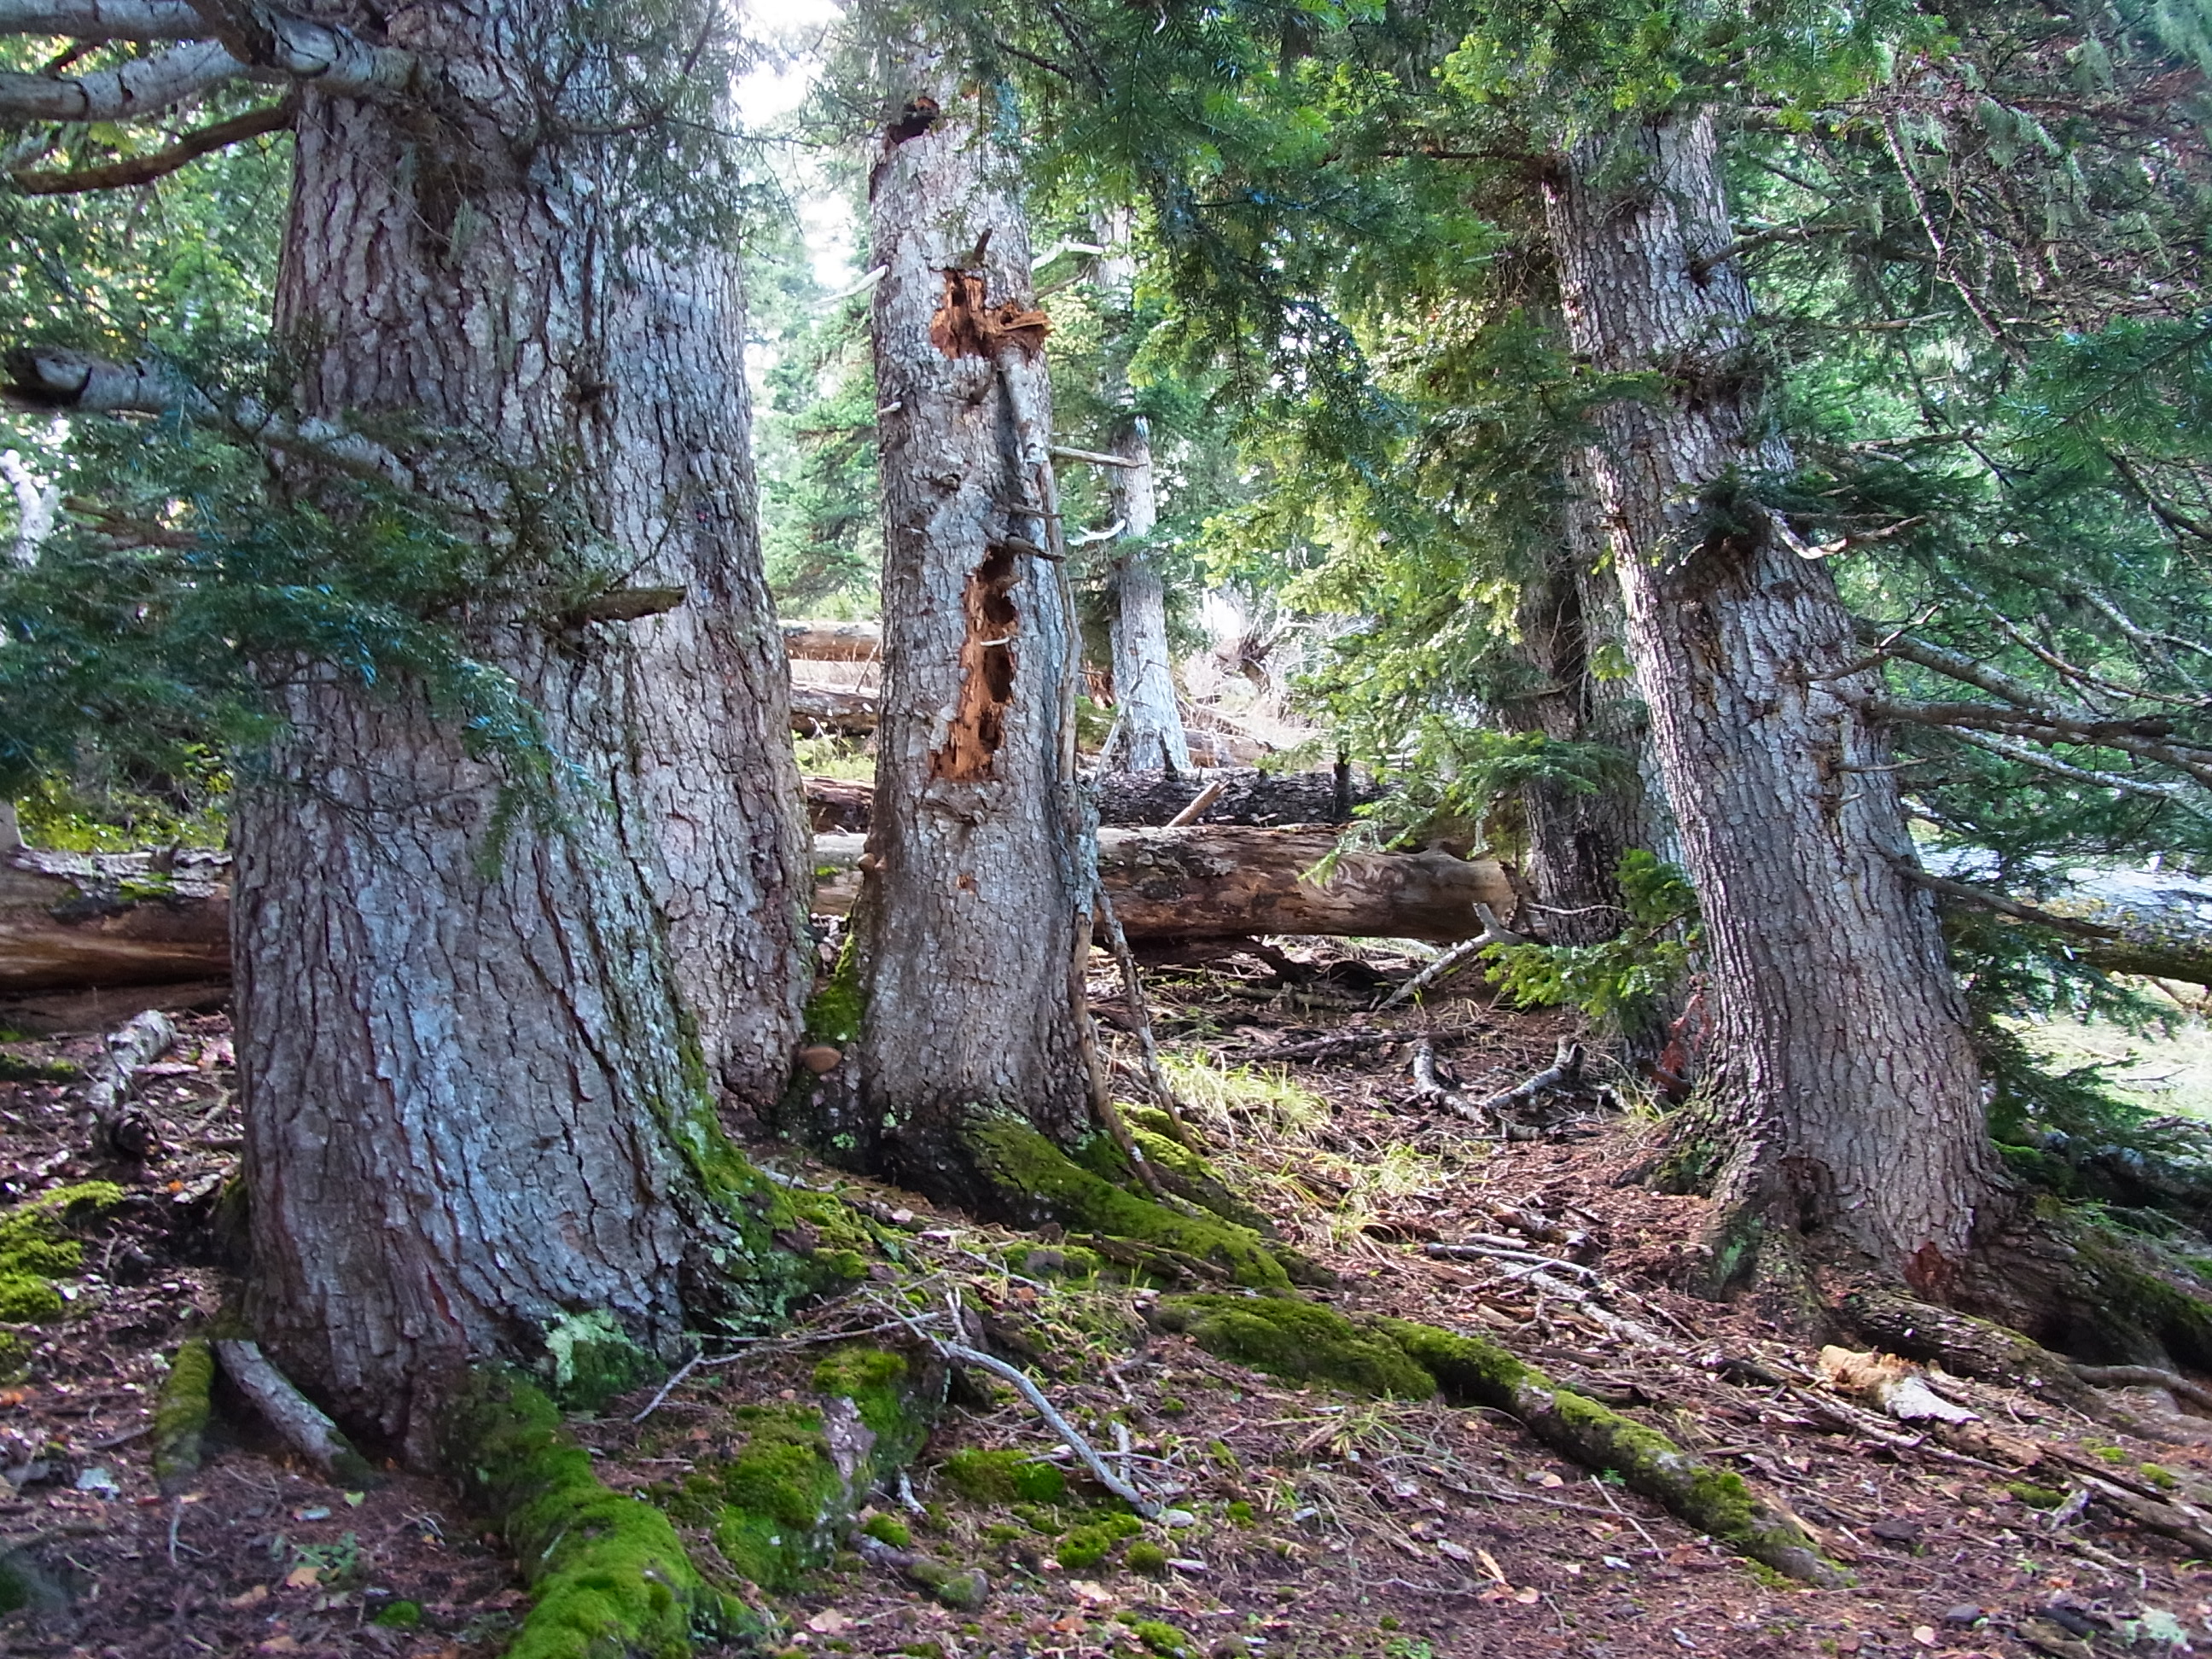 Hacemos balance de trece años de Sèlvans diagnosticando, conservando y custodiando nuestro patrimonio forestal más singular.